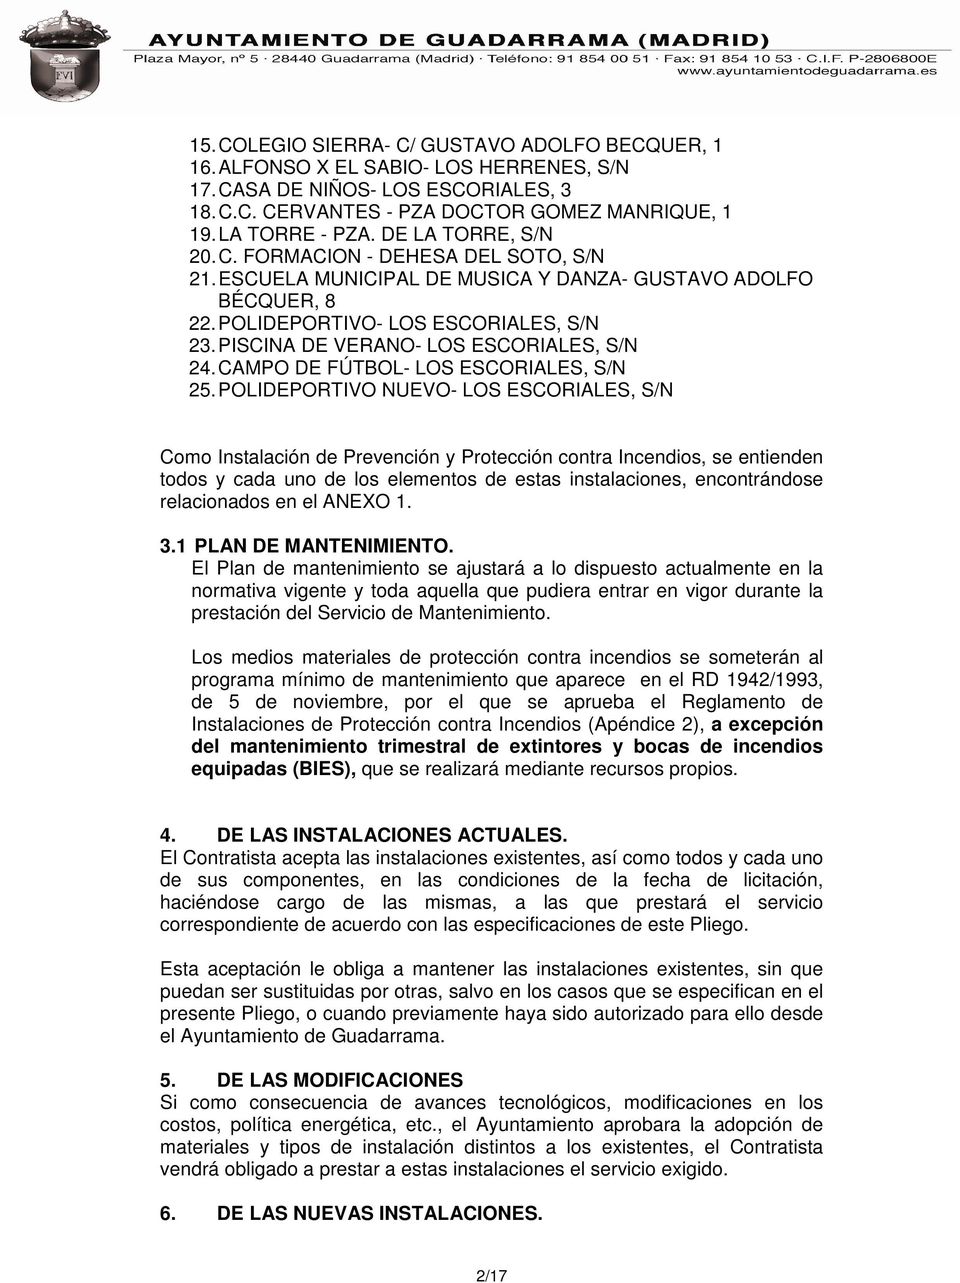 PISCINA DE VERANO- LOS ESCORIALES, S/N 24. CAMPO DE FÚTBOL- LOS ESCORIALES, S/N 25.